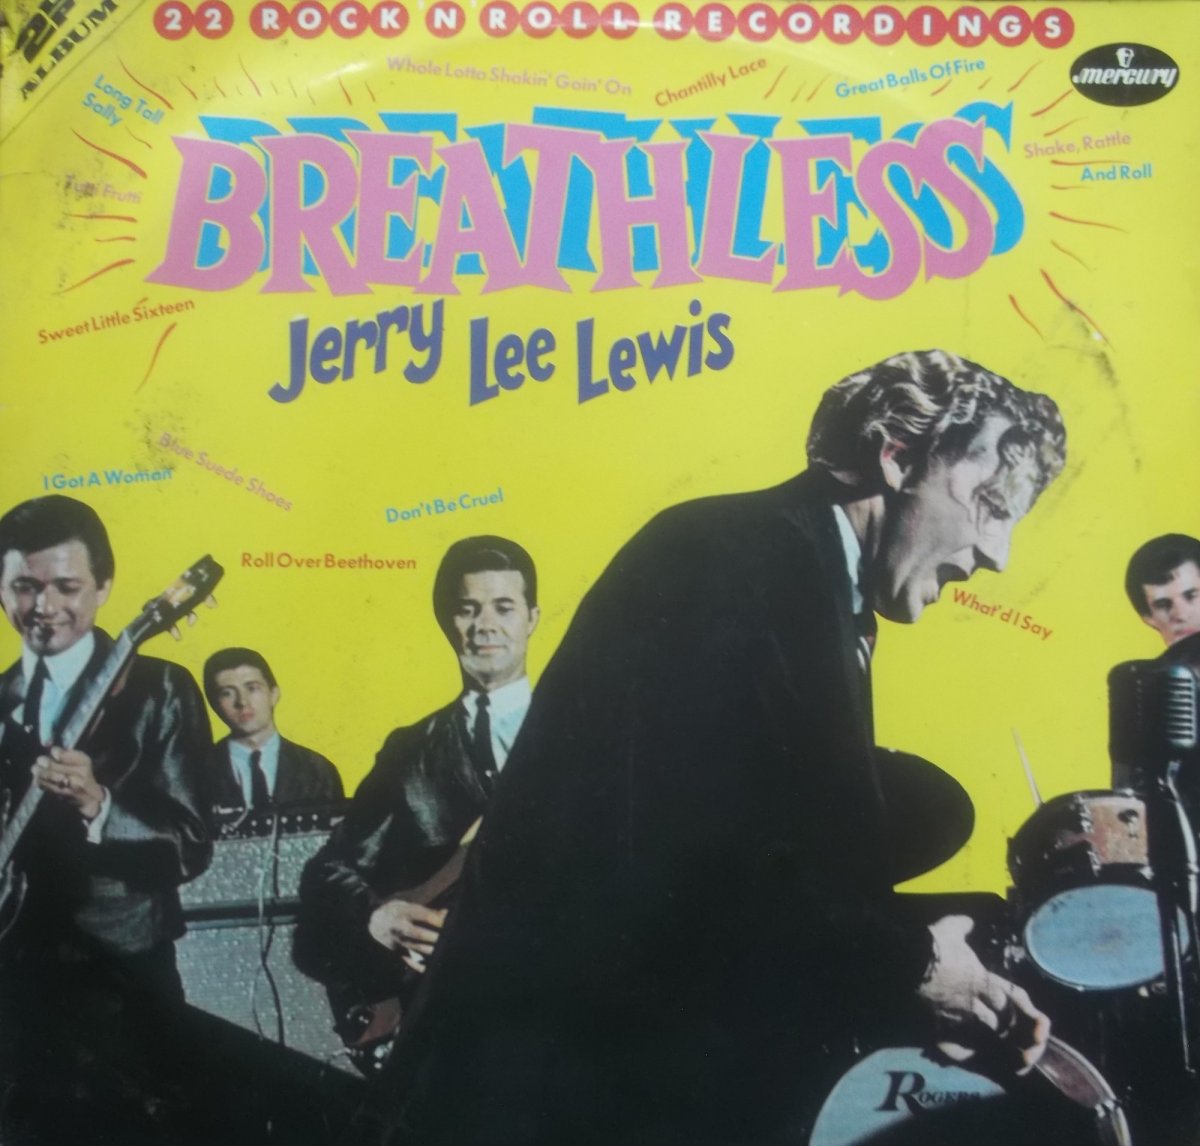 Jerry Lee Lewis – Breathless - 22 Rock N Roll Recordings